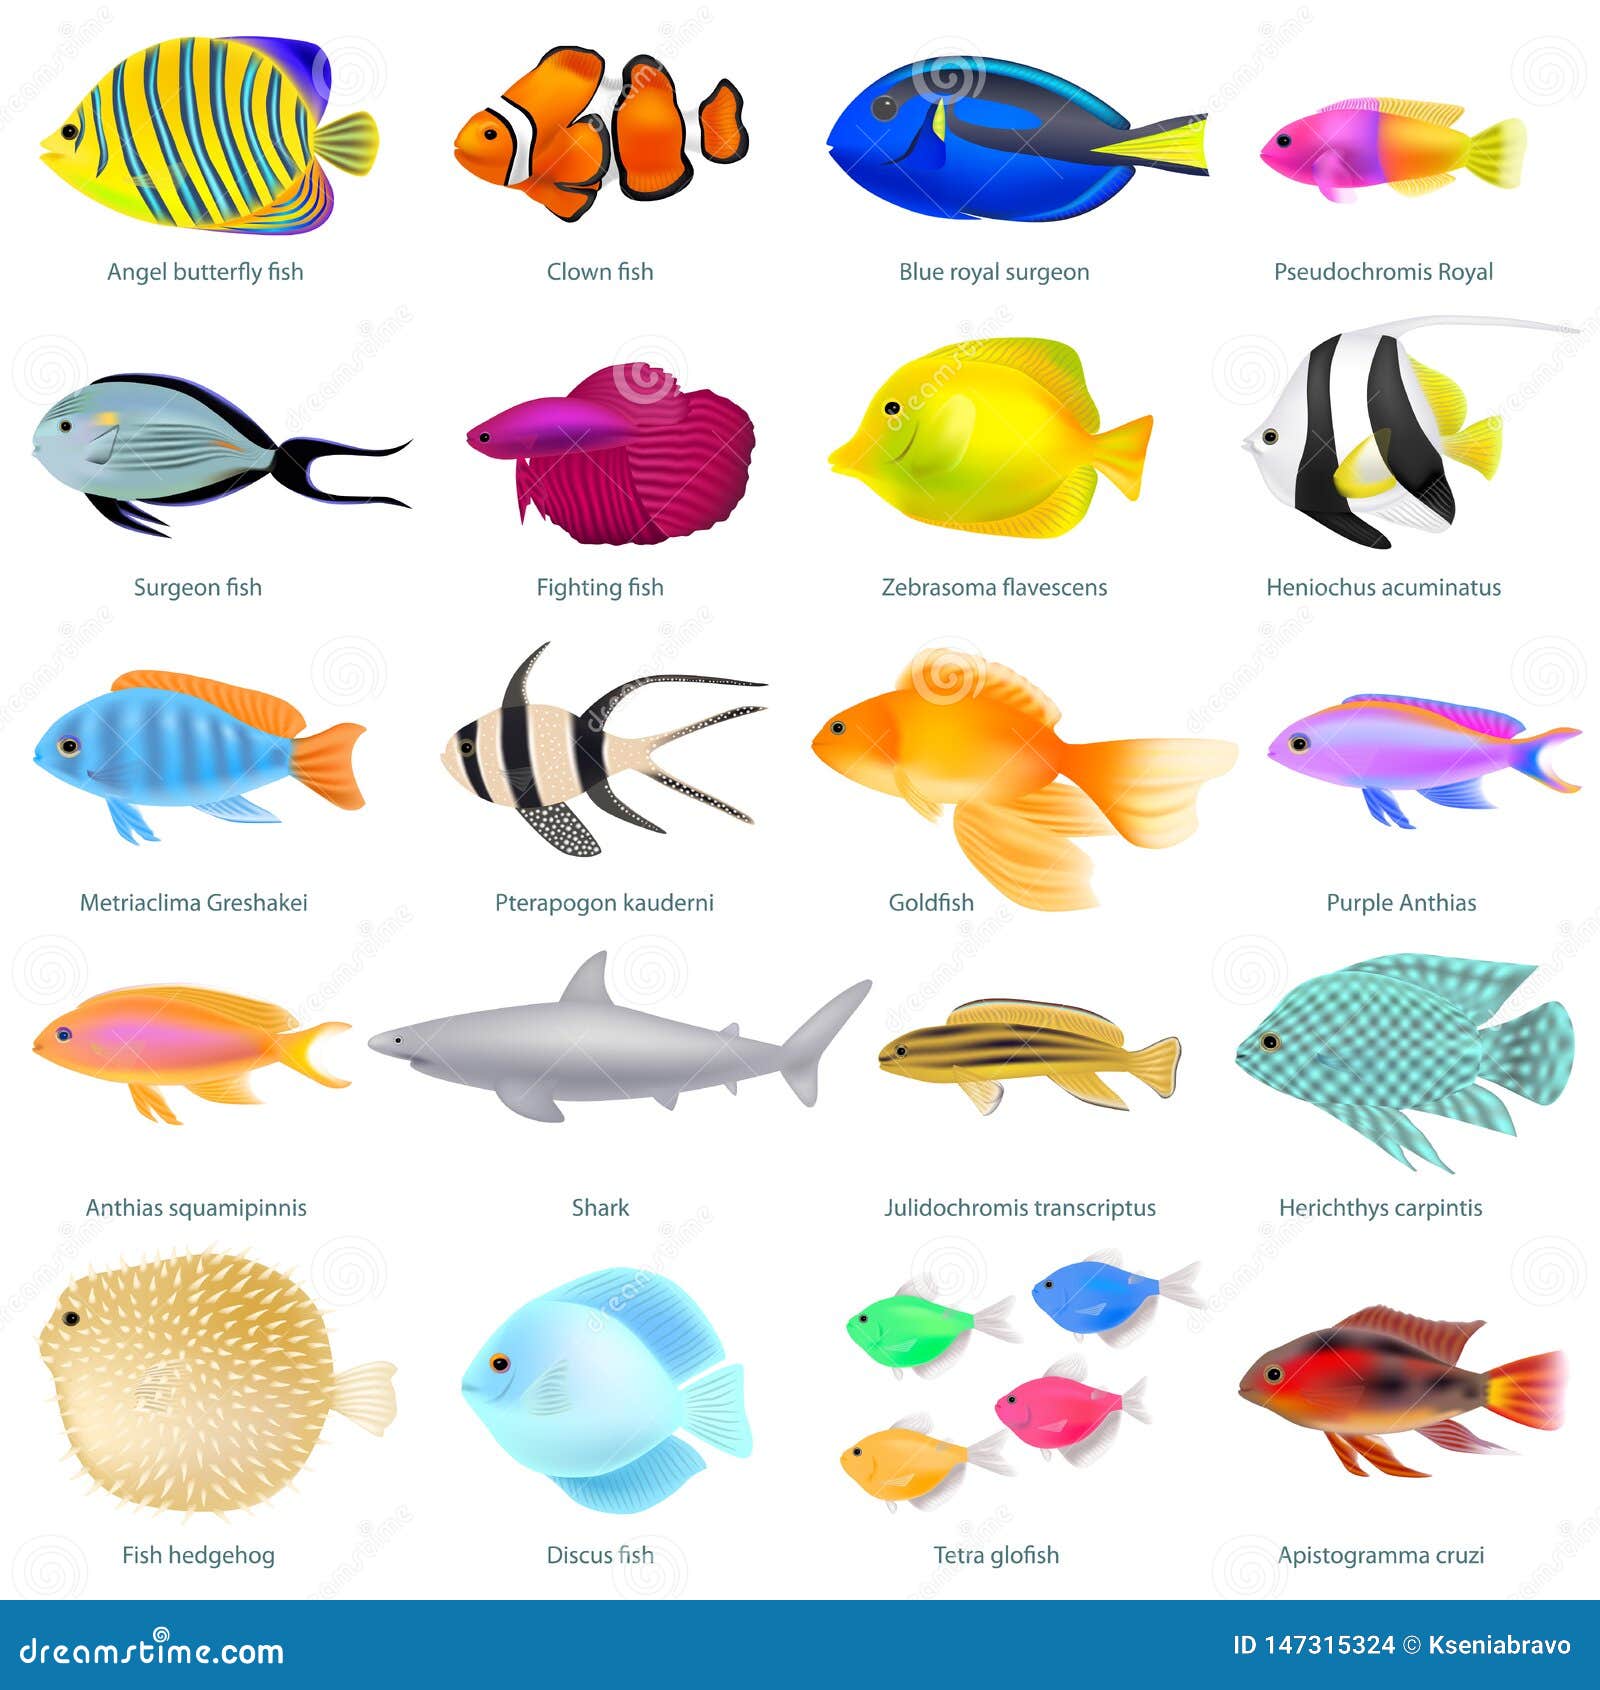 Fish name. Тропические рыбки по названиям. Определитель тропических рыб. Закрученная рыбка разных цветов. Fish Fishes difference.